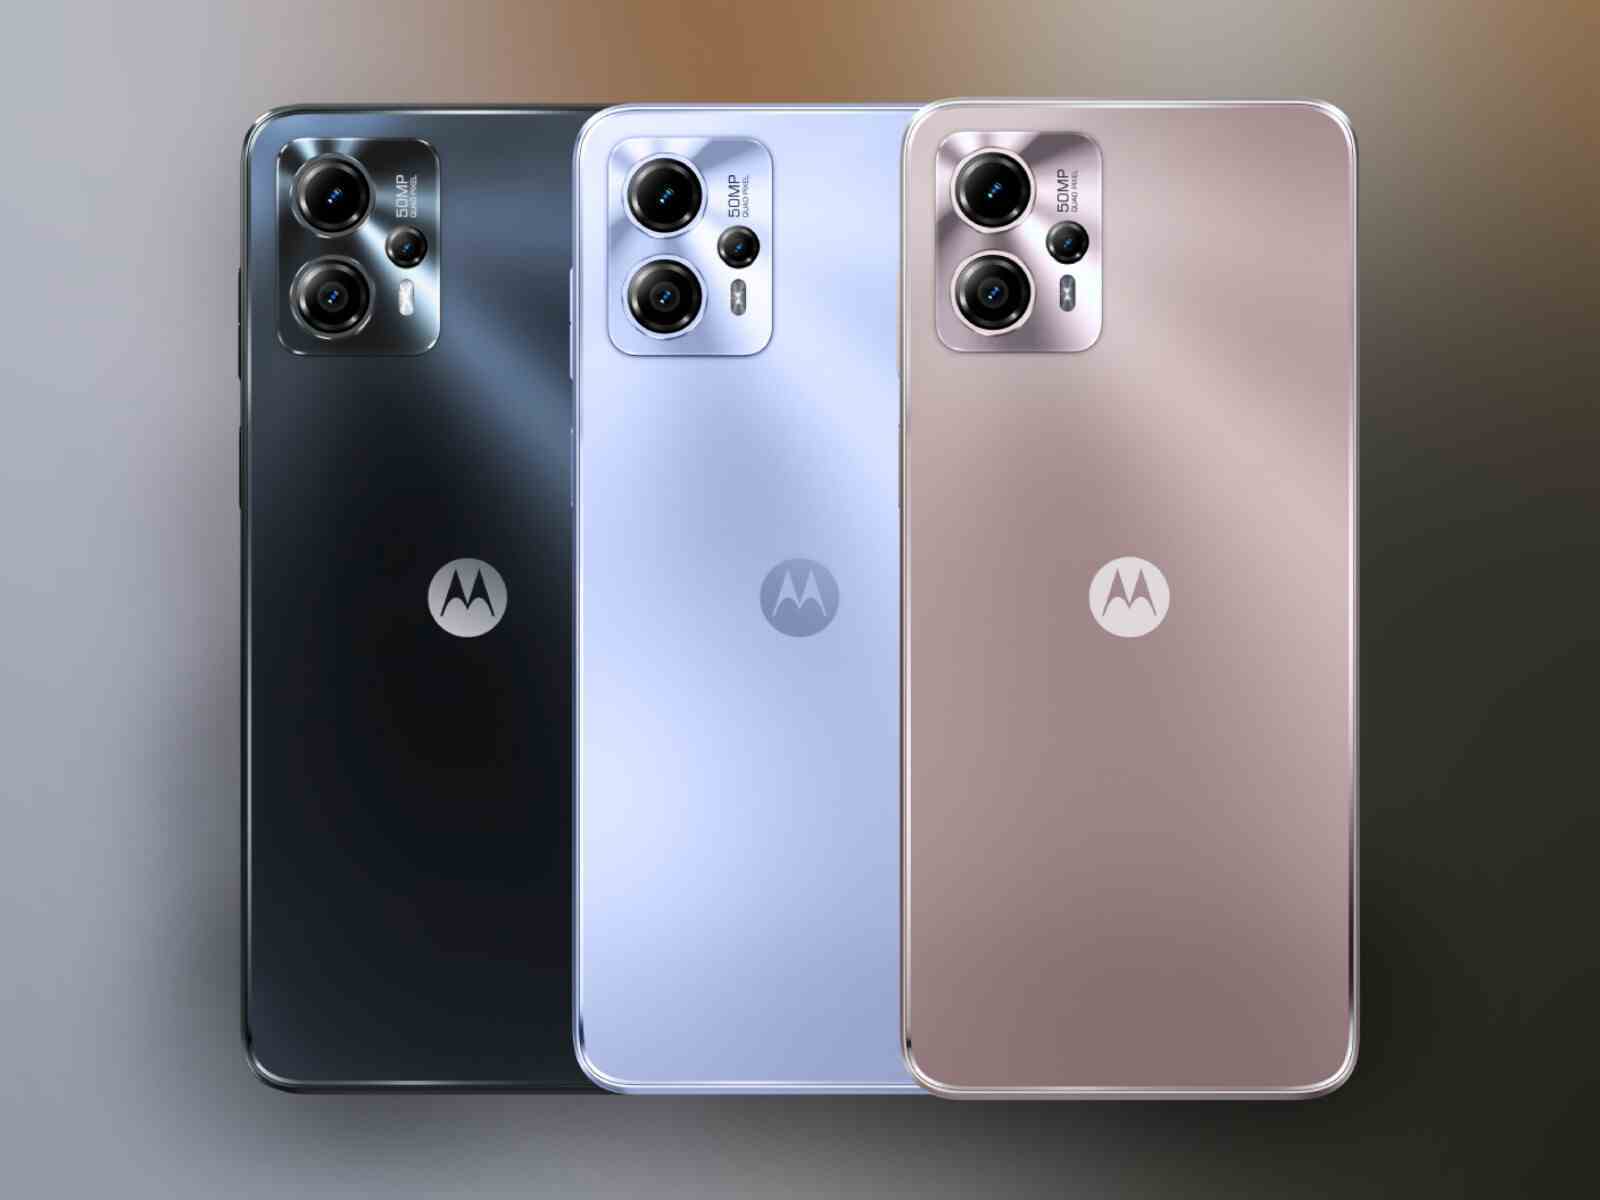 Moto G13, Mat Kömür, Mavi Lavanta ve Gül Altın renklerinde mevcuttur.  - Moto G13 ve Moto G23 ile tanışın: Motorola'nın en yeni ekonomik telefonları